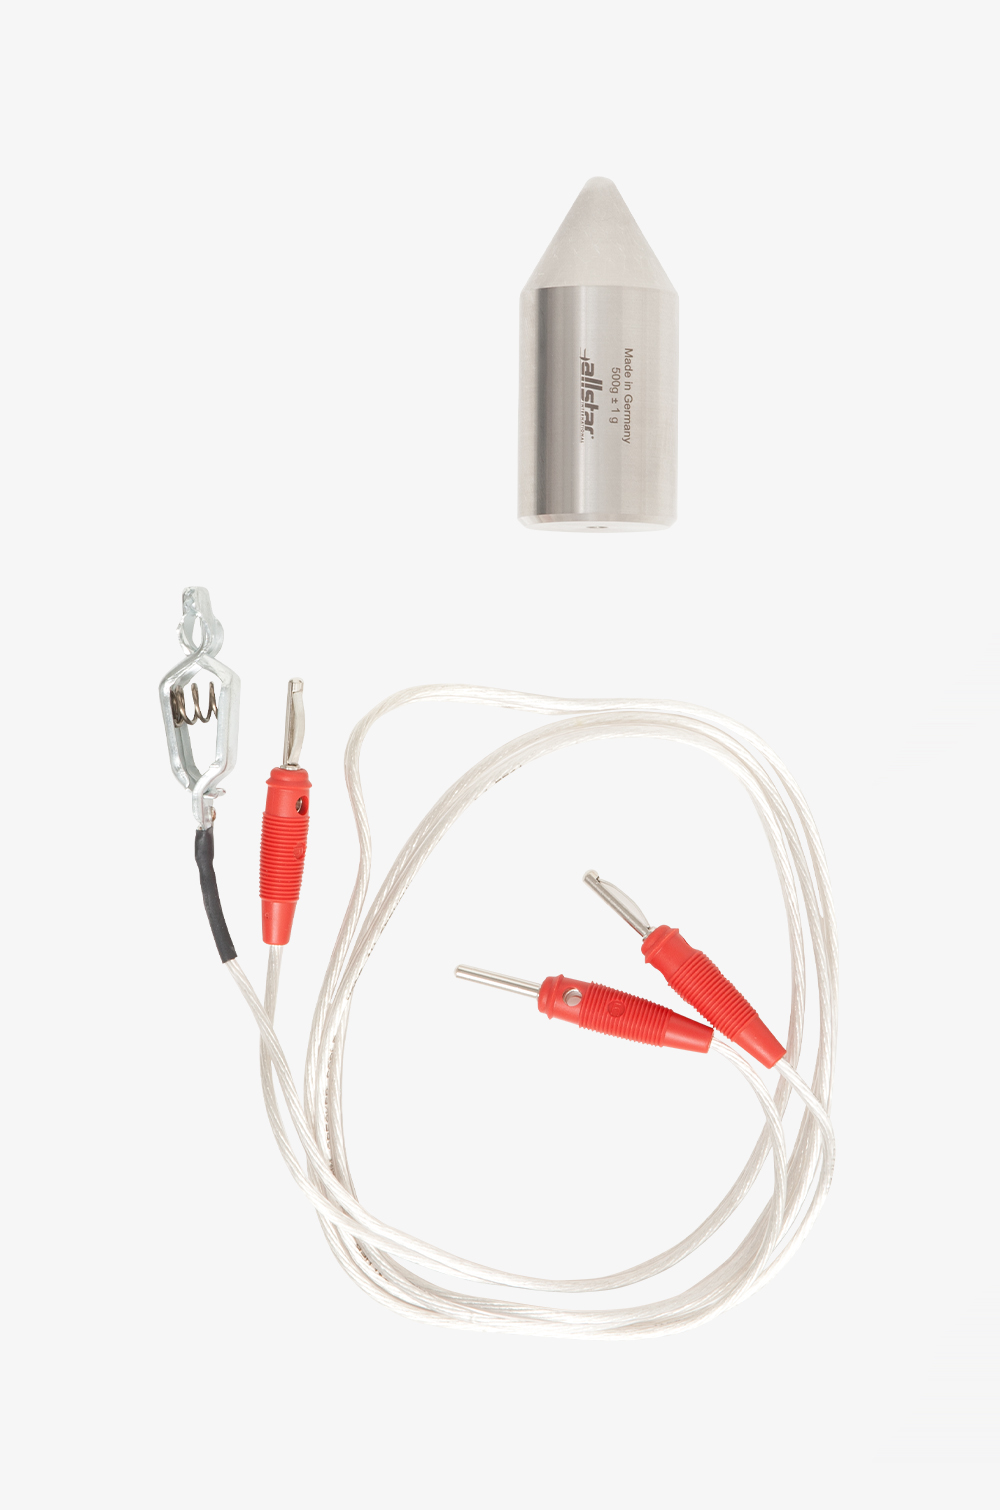 Messzubehör für TBOX One Universalprüfgerät (bestehend aus Westprüfstift, 500g, und elektr. isolierten Kabeln mit Anschlusstücken)cken)